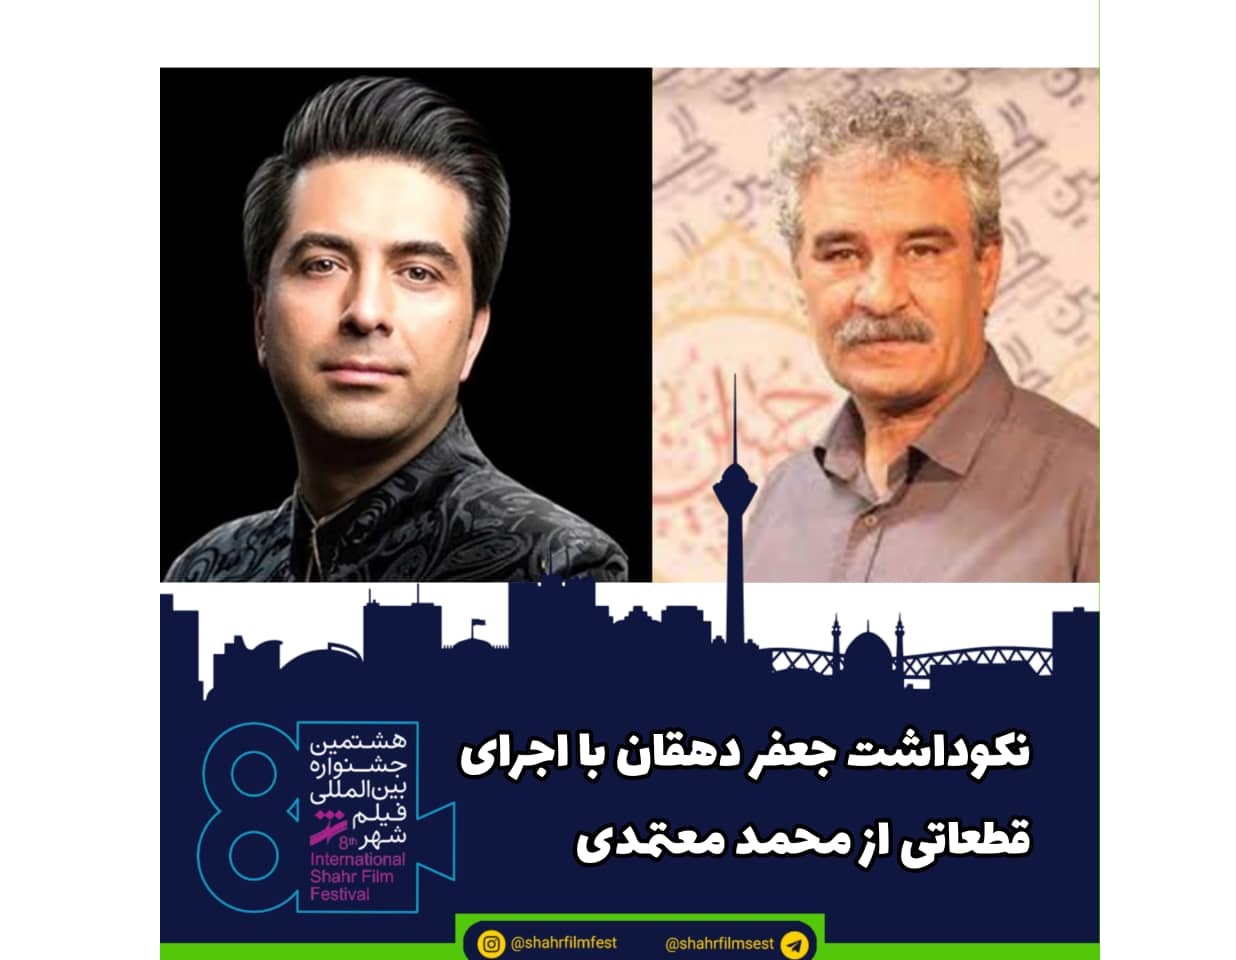 افتتاحیه جشنواره فیلم شهر با نکوداشت جعفر دهقان و اجرای قطعاتی از محمد معتمدی